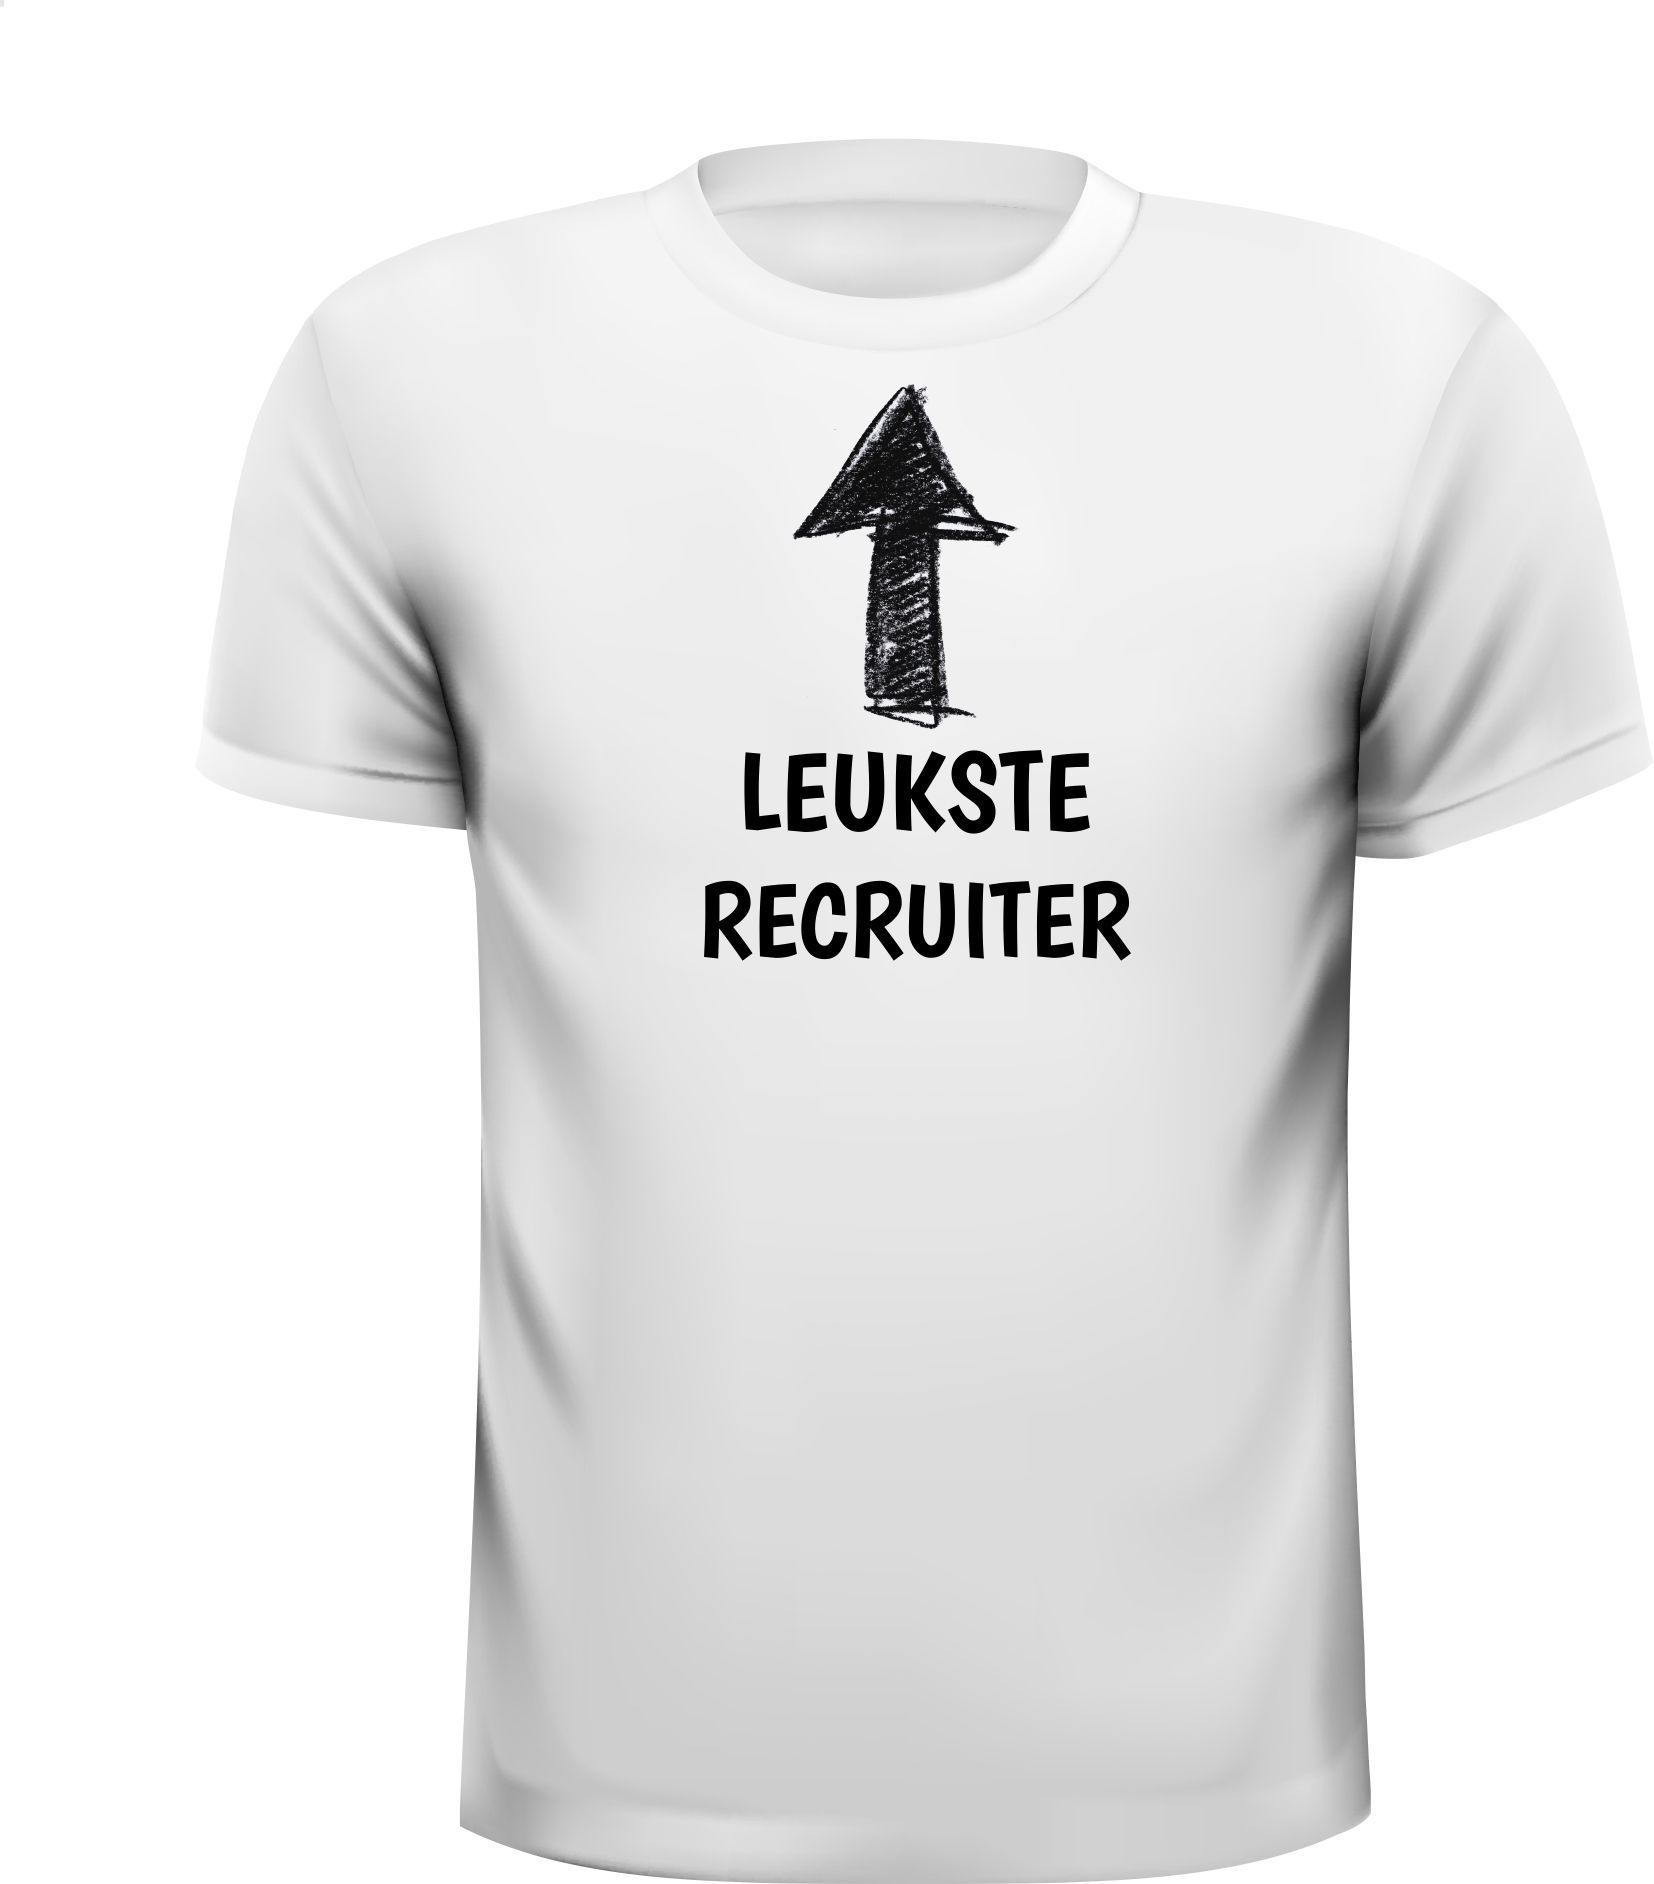 T-shirt leukste recruiter